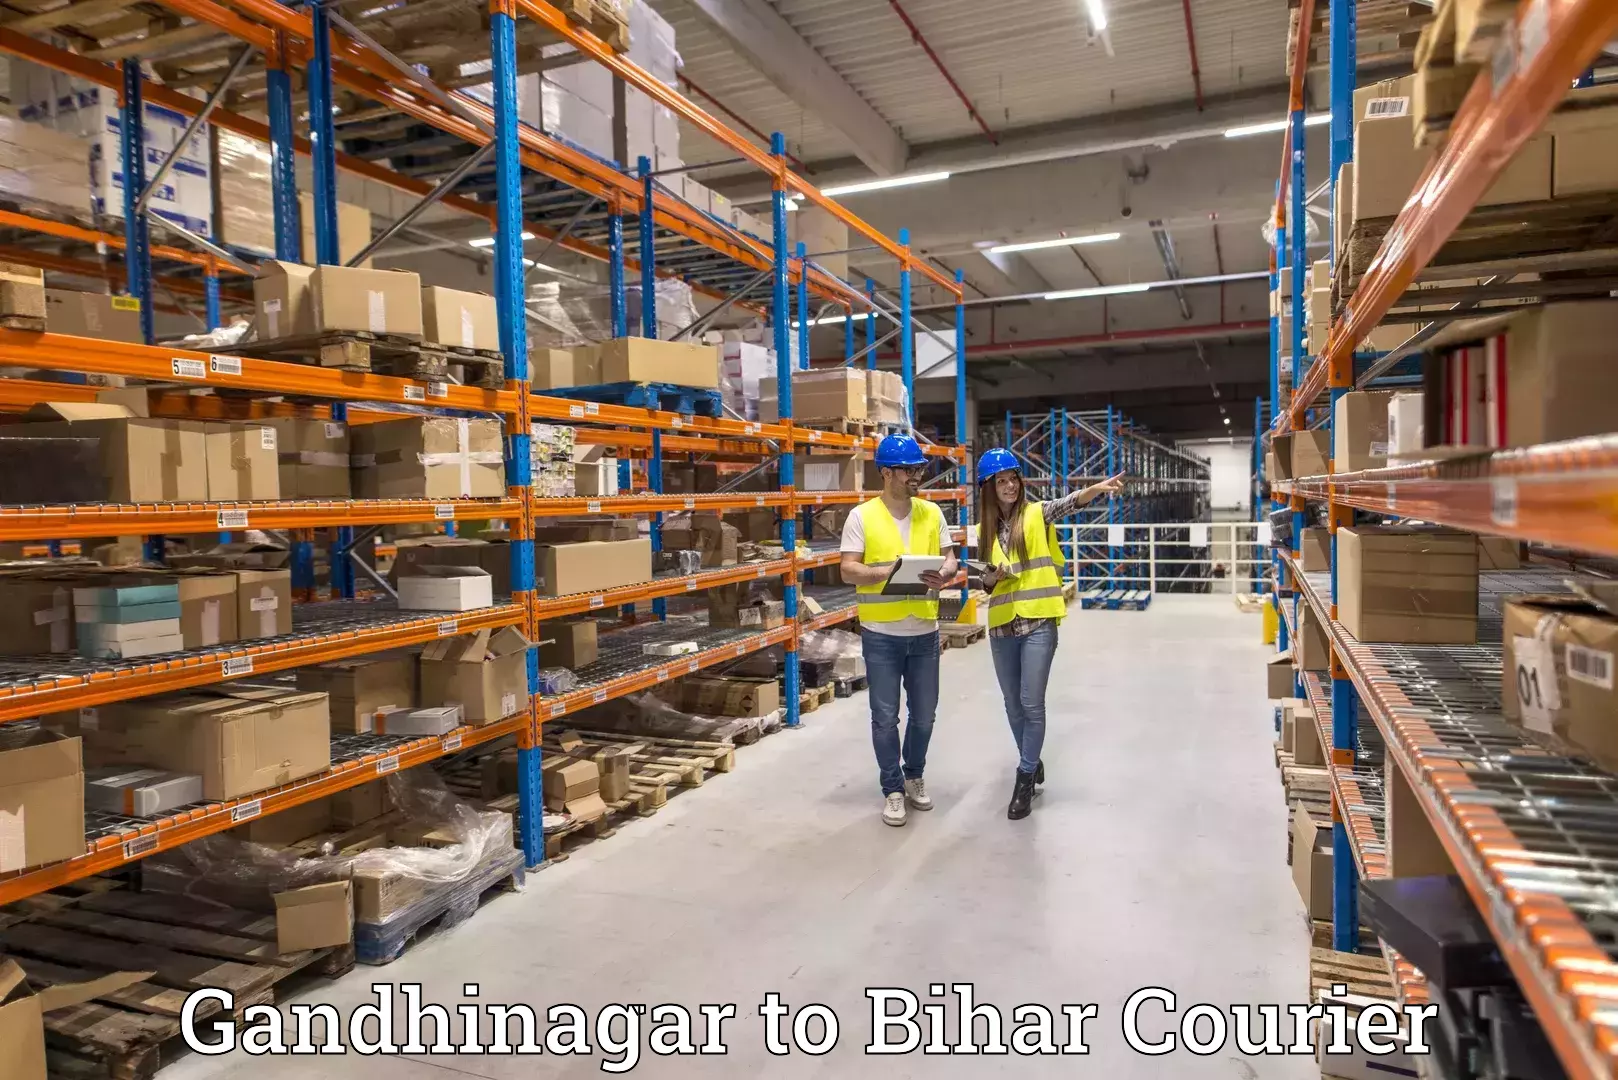 State-of-the-art courier technology Gandhinagar to Motihari